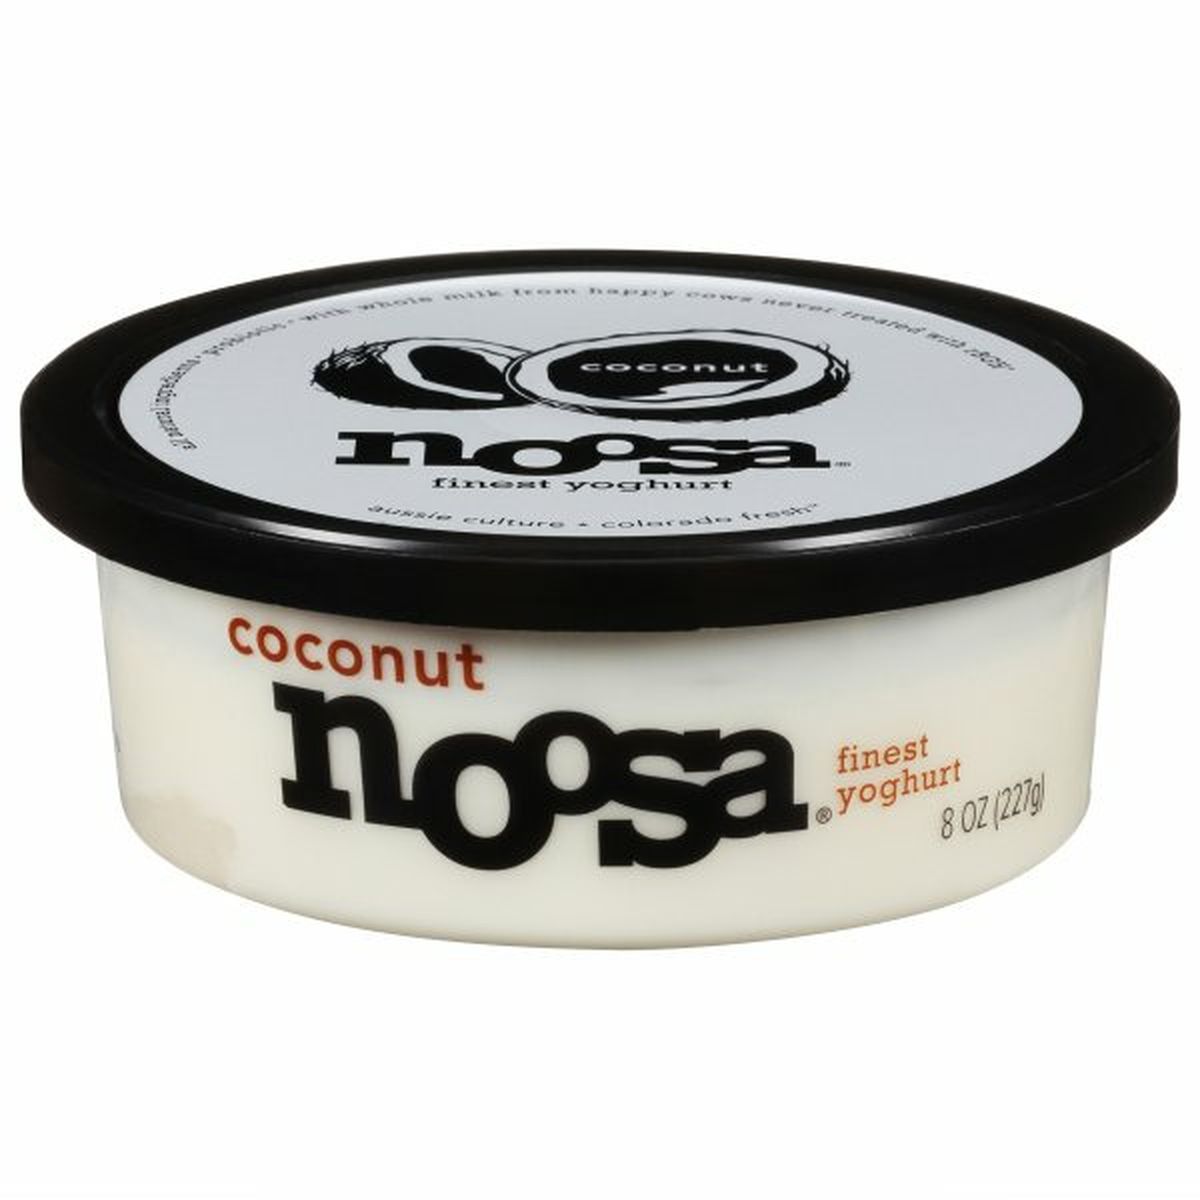 Calories in noosa Finest Yoghurt, Coconut